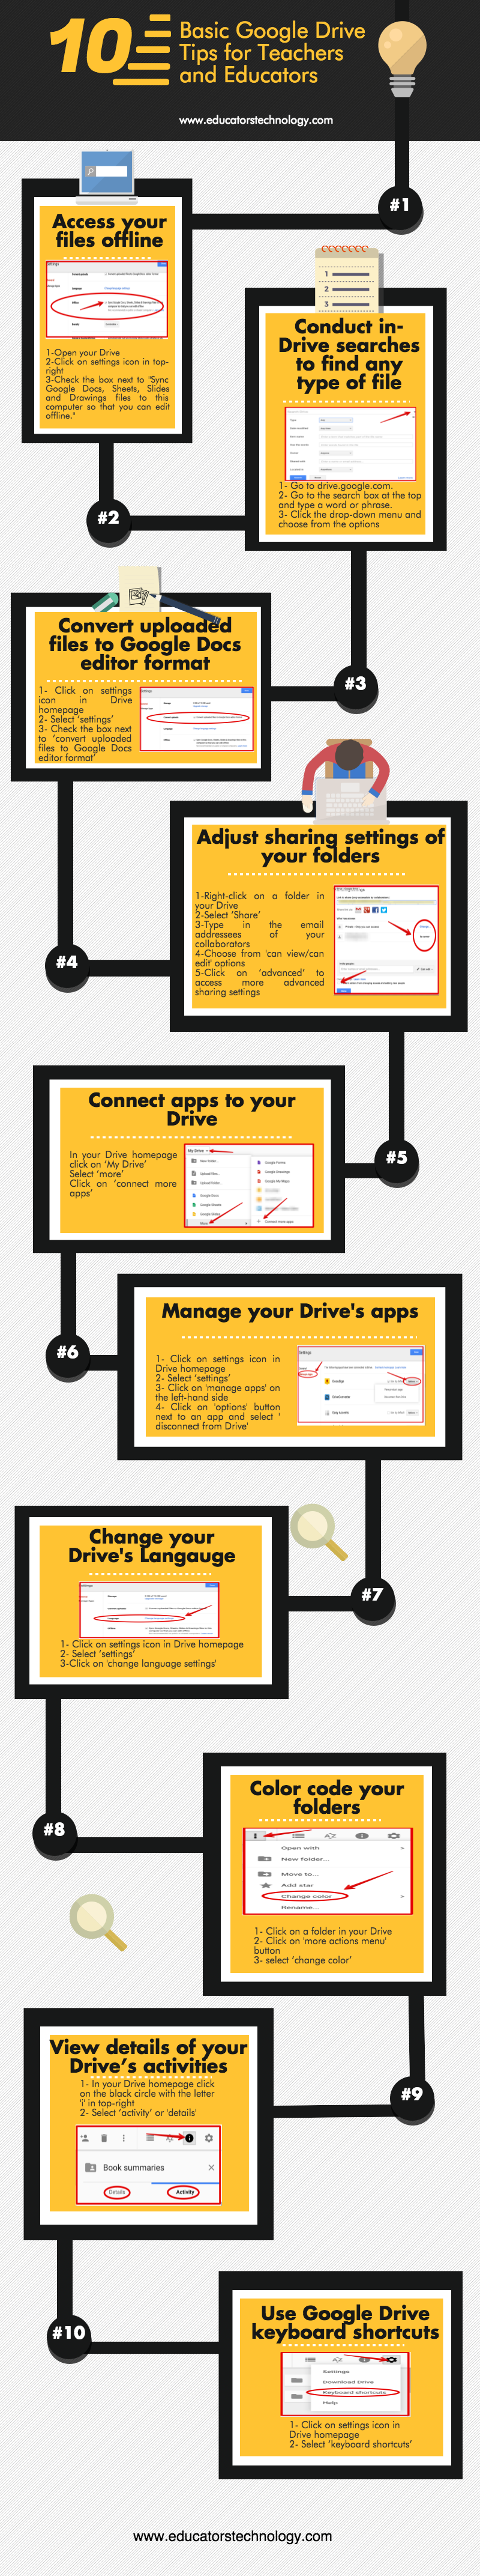 google drive tips for teachers